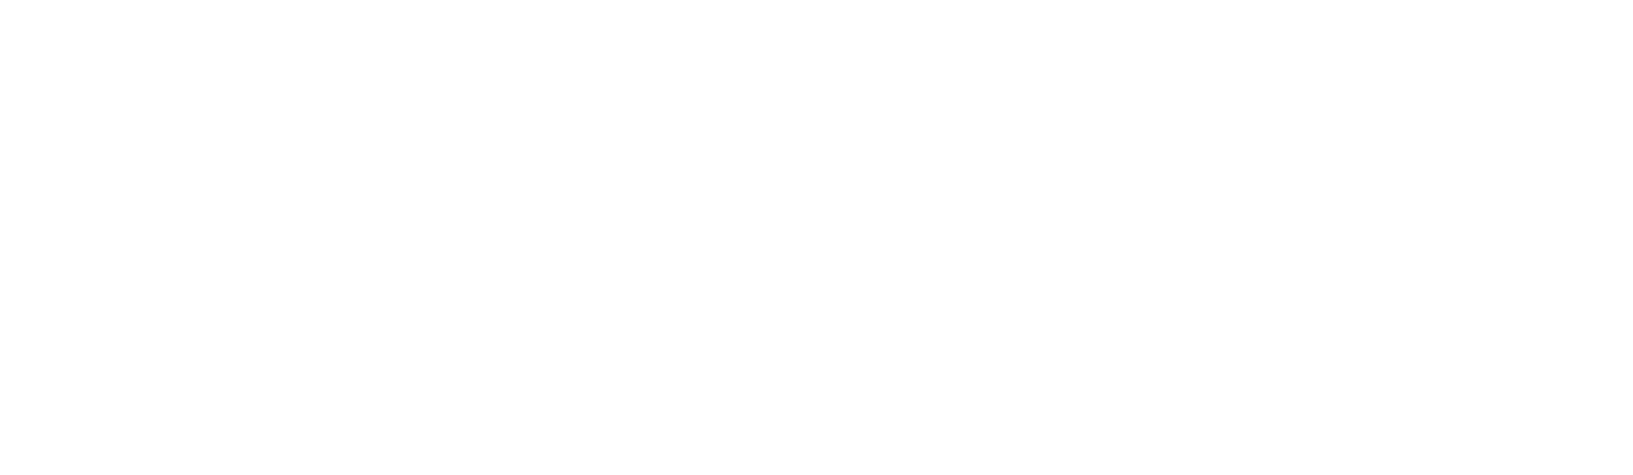 CD Baby Disc Manufacturing Logo